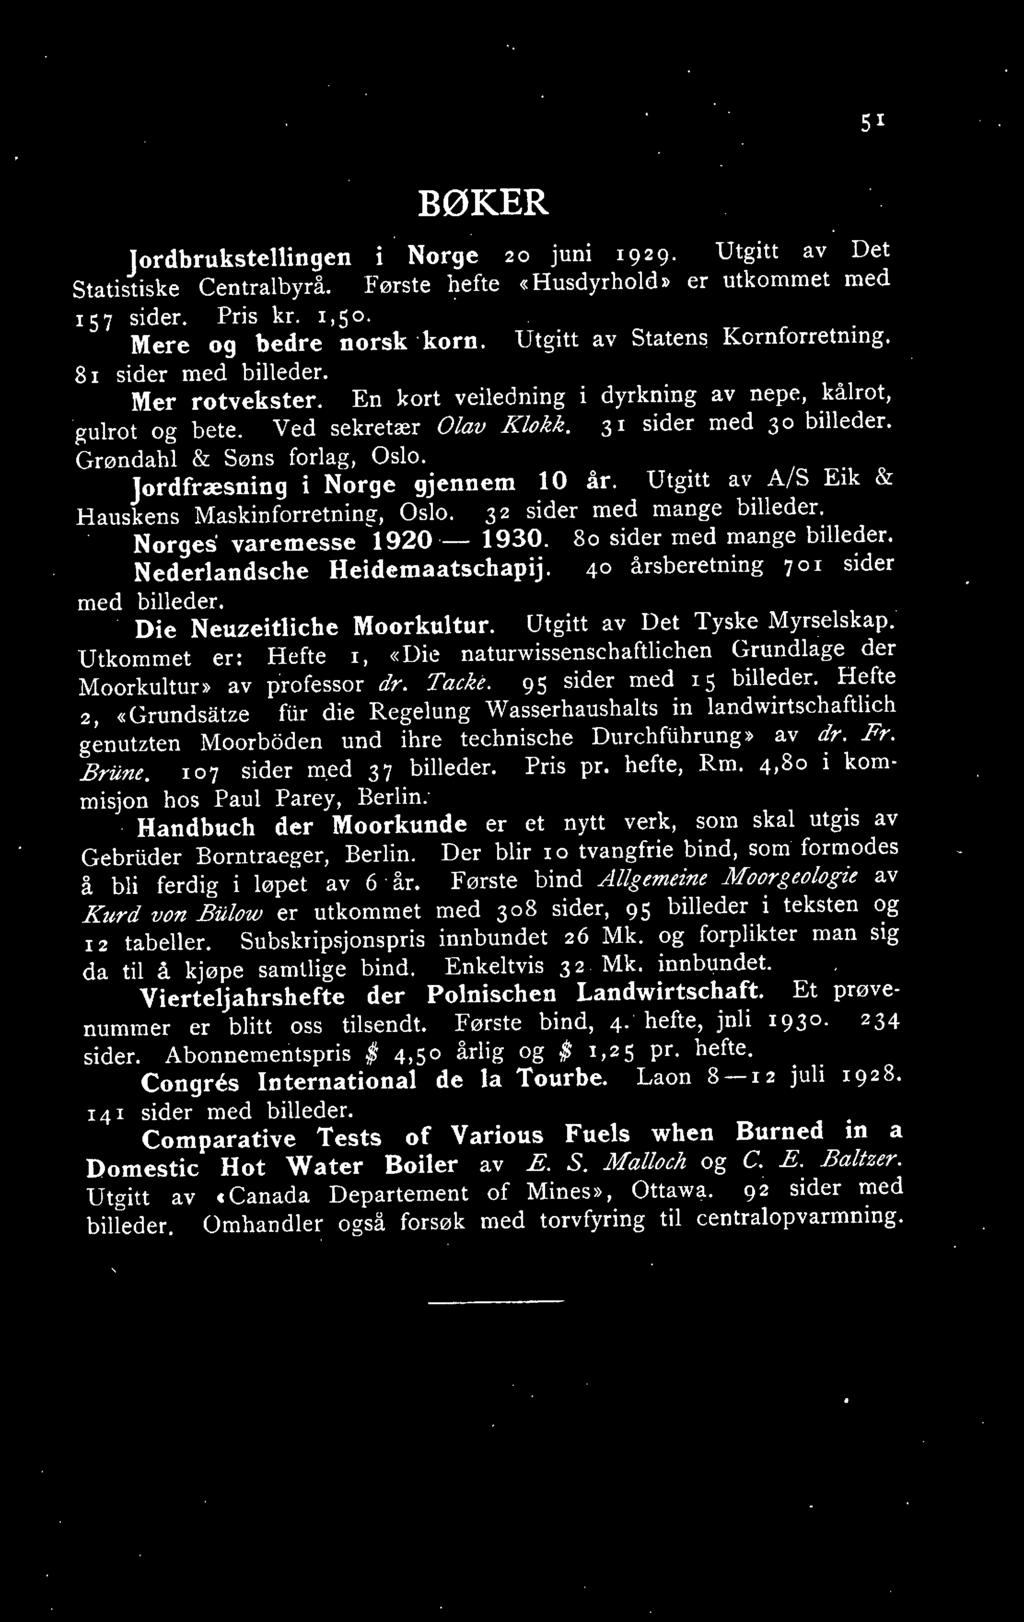 Grøndahl & Søns forlag, Oslo. Jordfræsning i Norge gjennem 10 år. Utgitt av A/S Eik & Hanskens Maskinforretning, Oslo. 32 sider med mange billeder. Norges' varemesse 1920-1930.